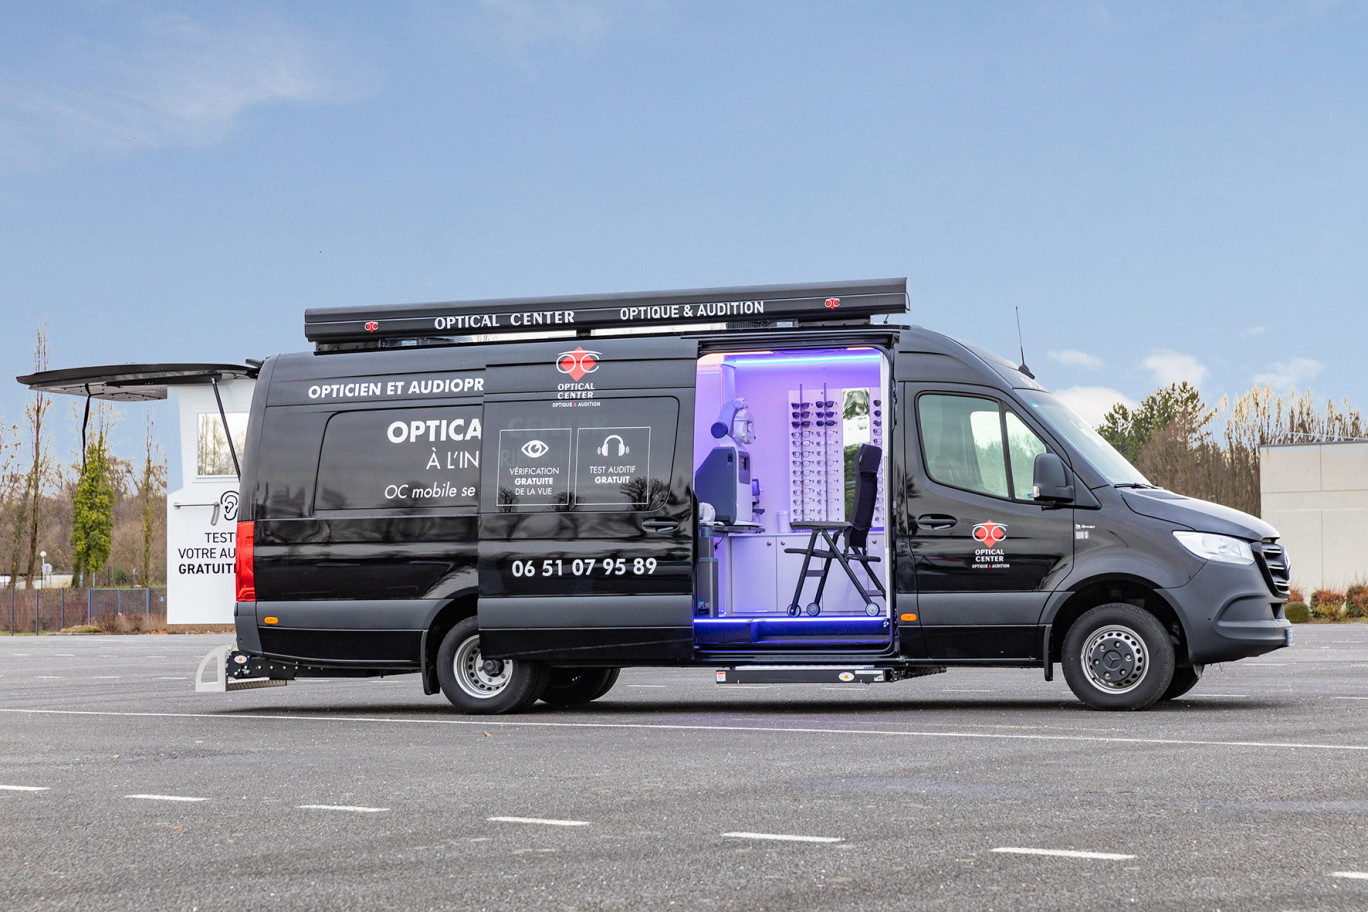 L’OC Mobile d’Optical Center permet de répondre aux besoins en matière d’examens ophtalmologiques et auditifs en zones rurales dans le sud lorrain.